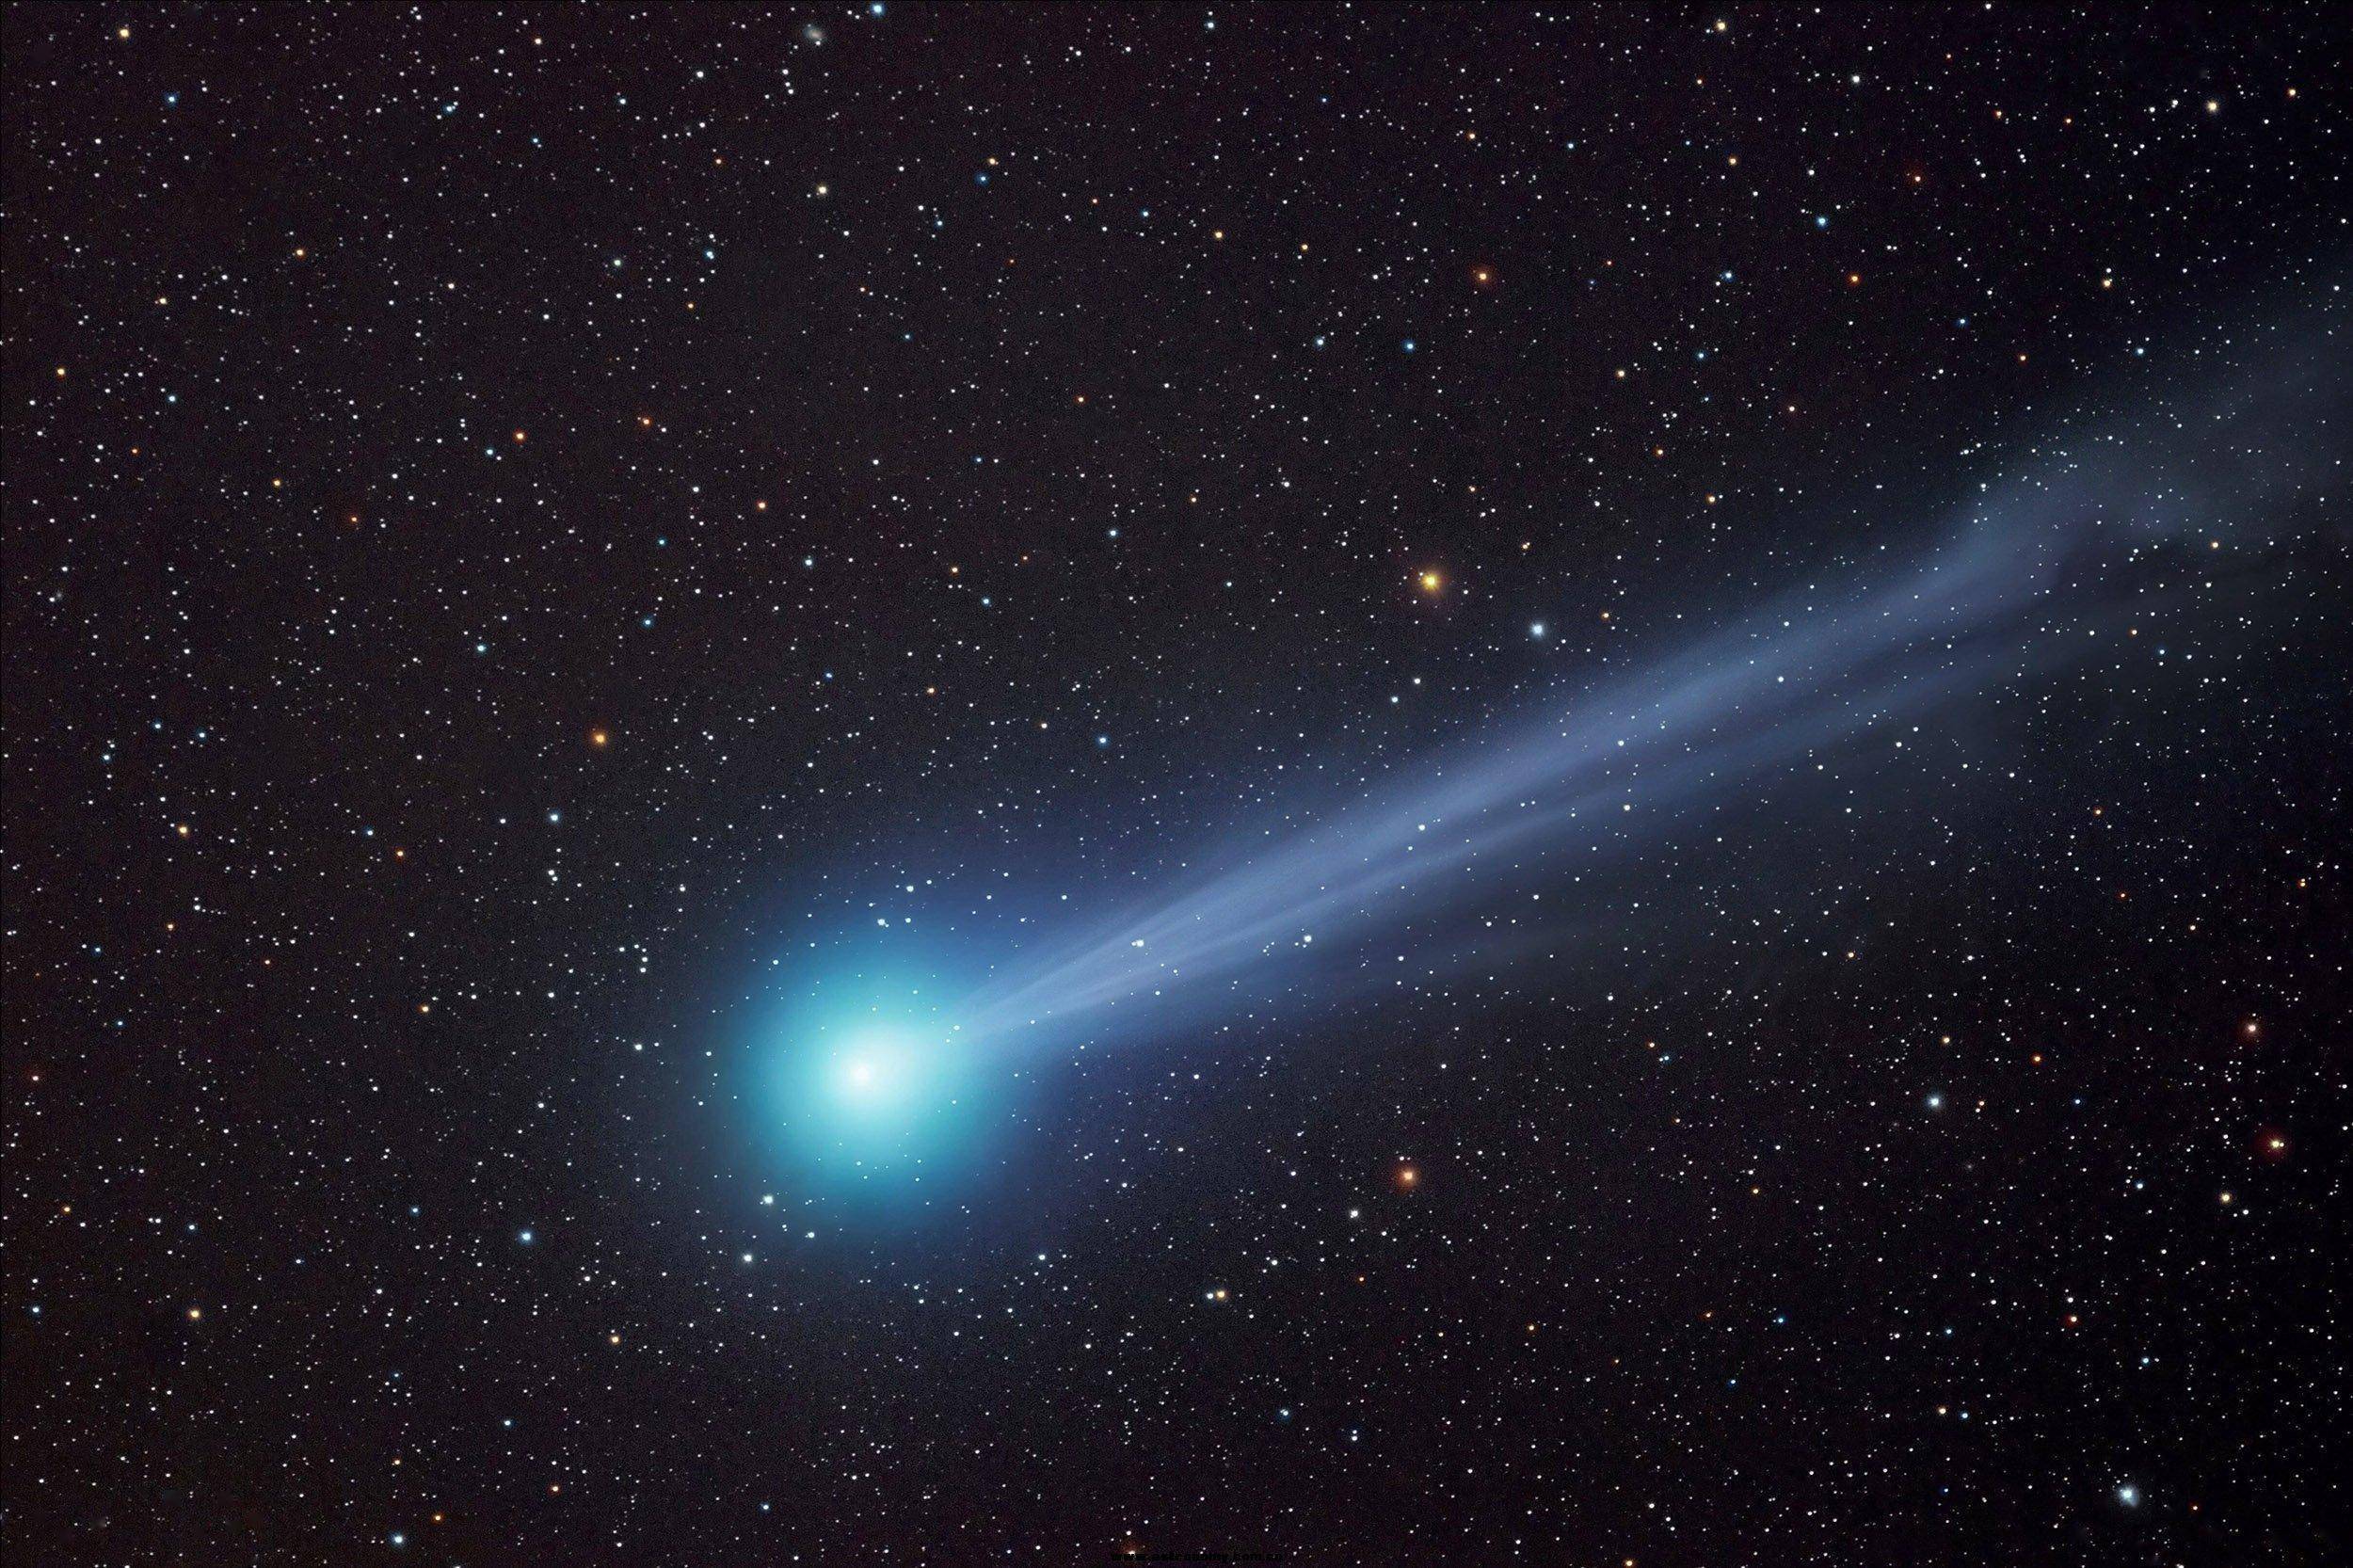 回来了,哈雷彗星返回太阳系,它撞向地球的可能性是多少?